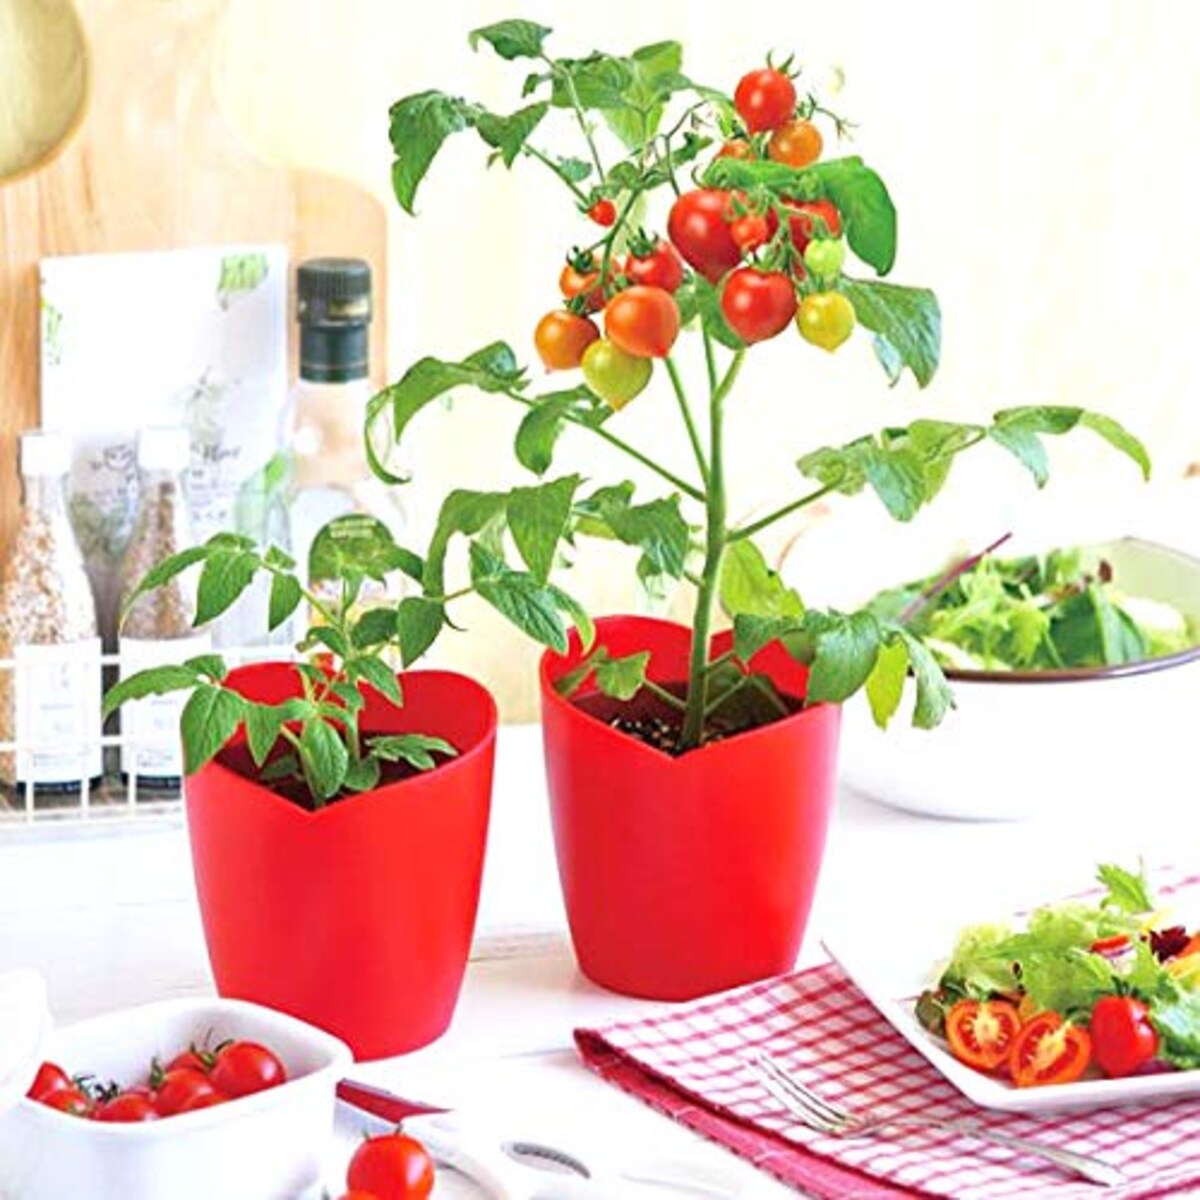  ハートの実がなるハートマト栽培セット[種から育てるミニトマトの栽培セット]画像2 